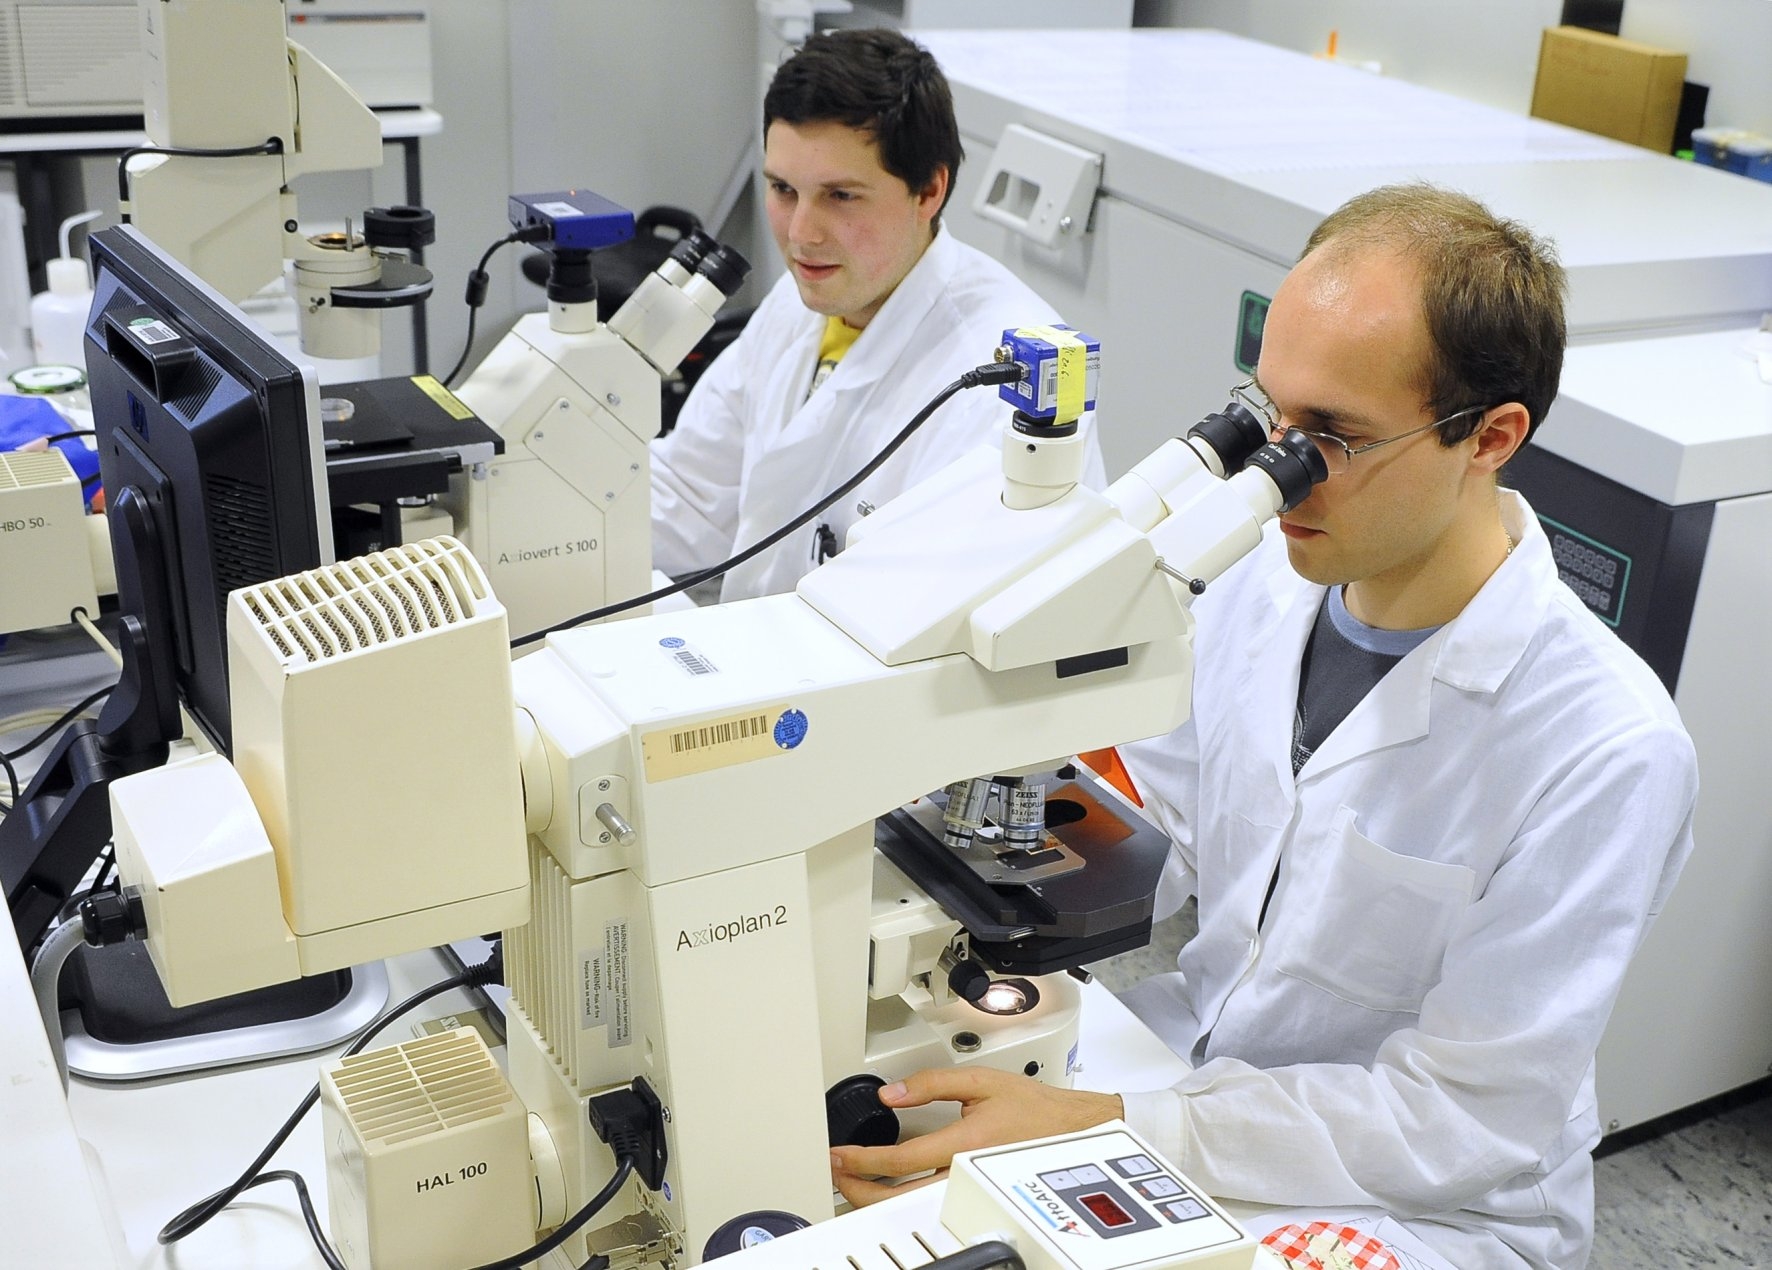 Zu sehen sind zwei Wissenschaftler beim Mikroskopieren.